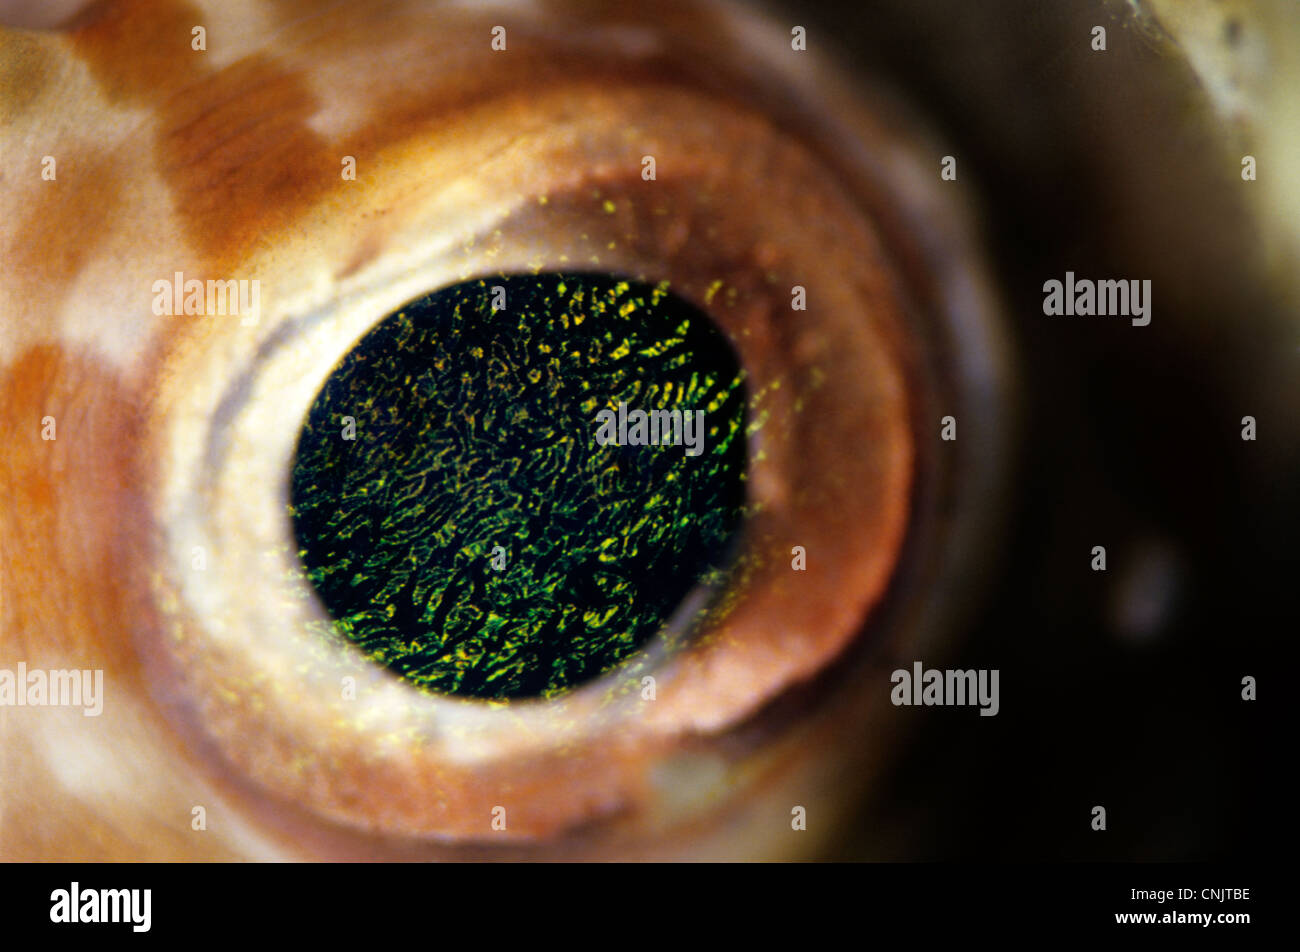 Eye of an orbicular burrfish (Cyclichthys orbicularis). Stock Photo